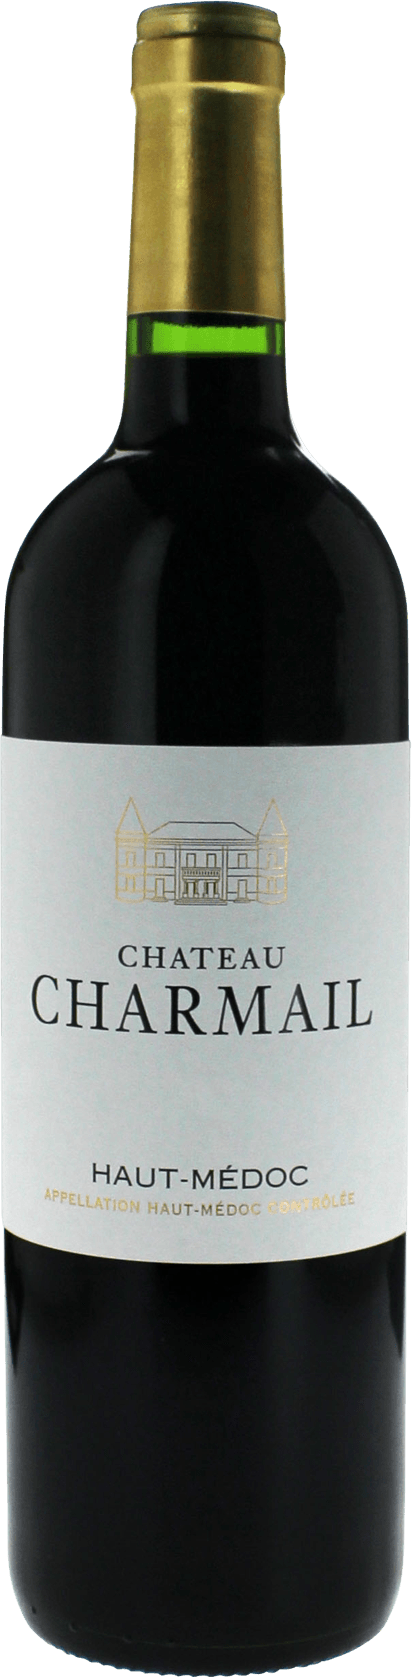 Charmail 2018  Haut-Mdoc, Bordeaux rouge